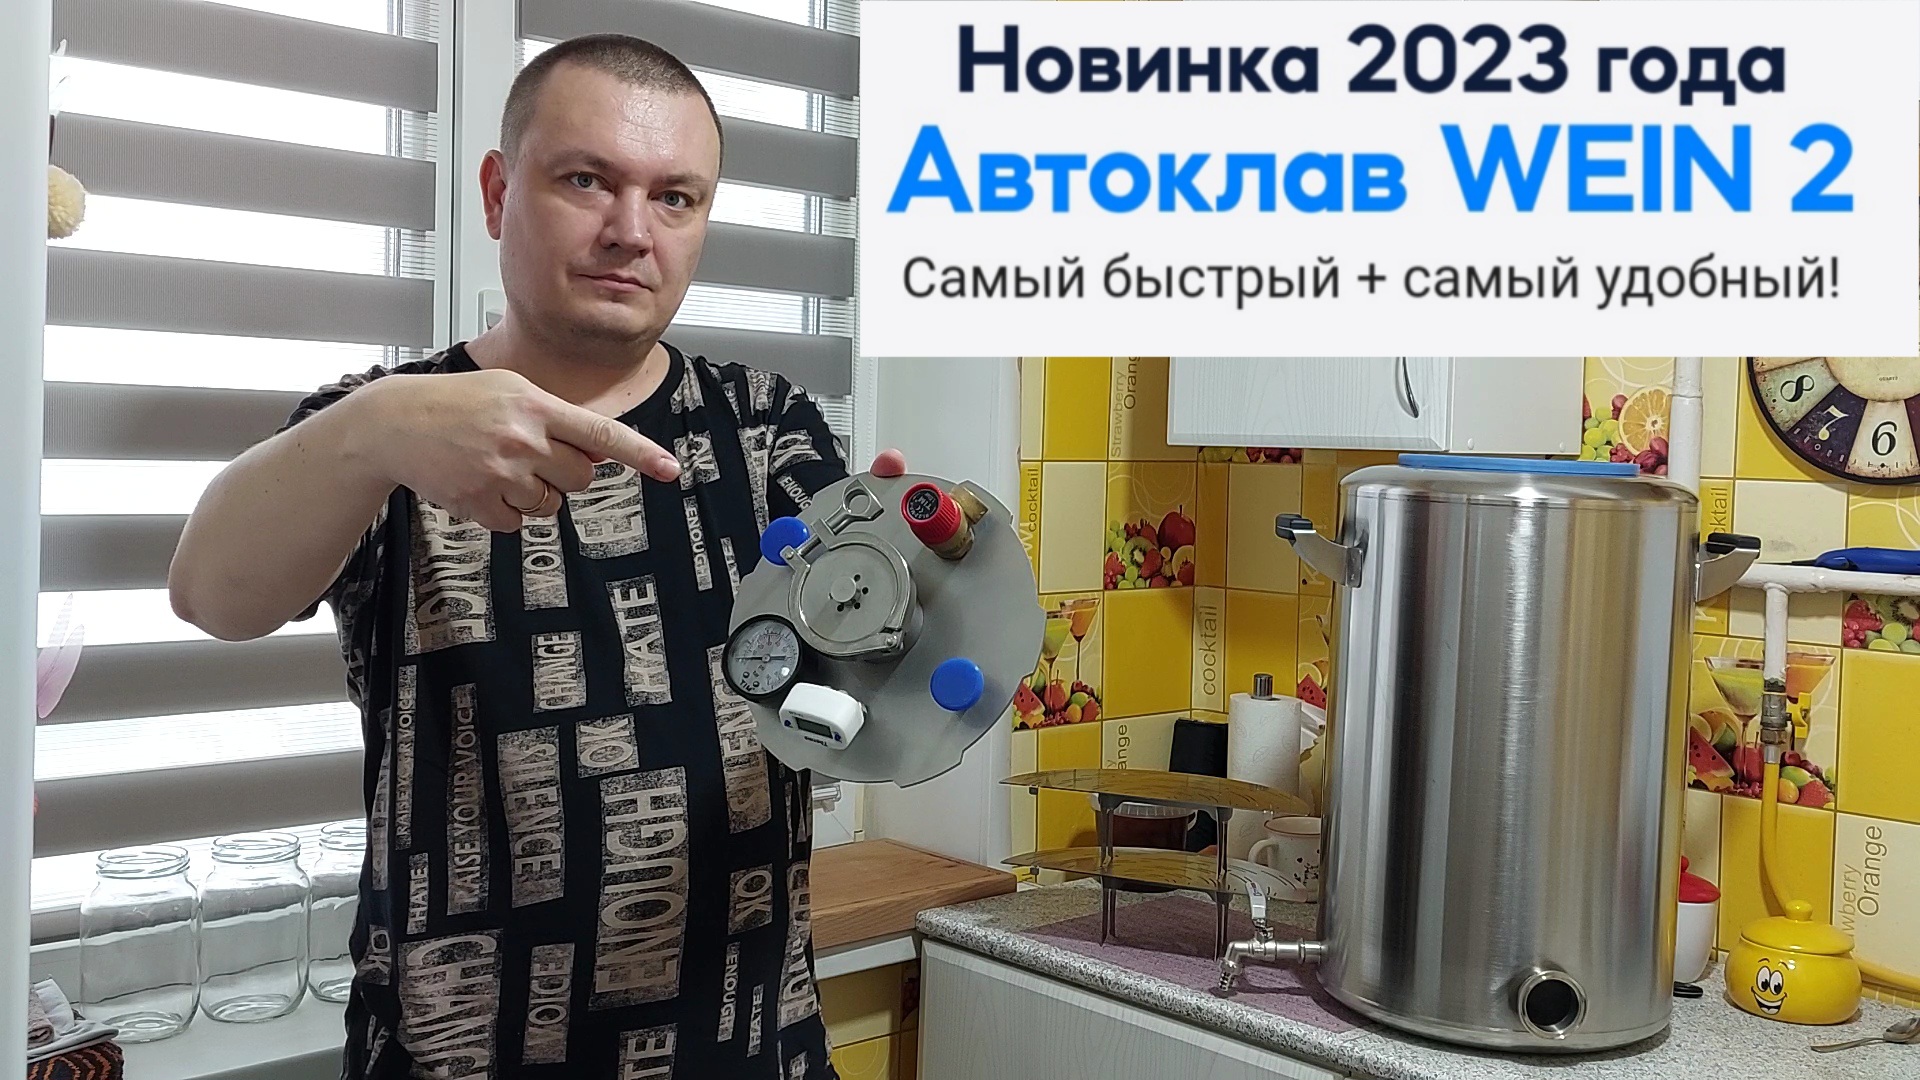 Автоклава Wein 2 Новинка 2023 года. Обзор и первые впечатления.